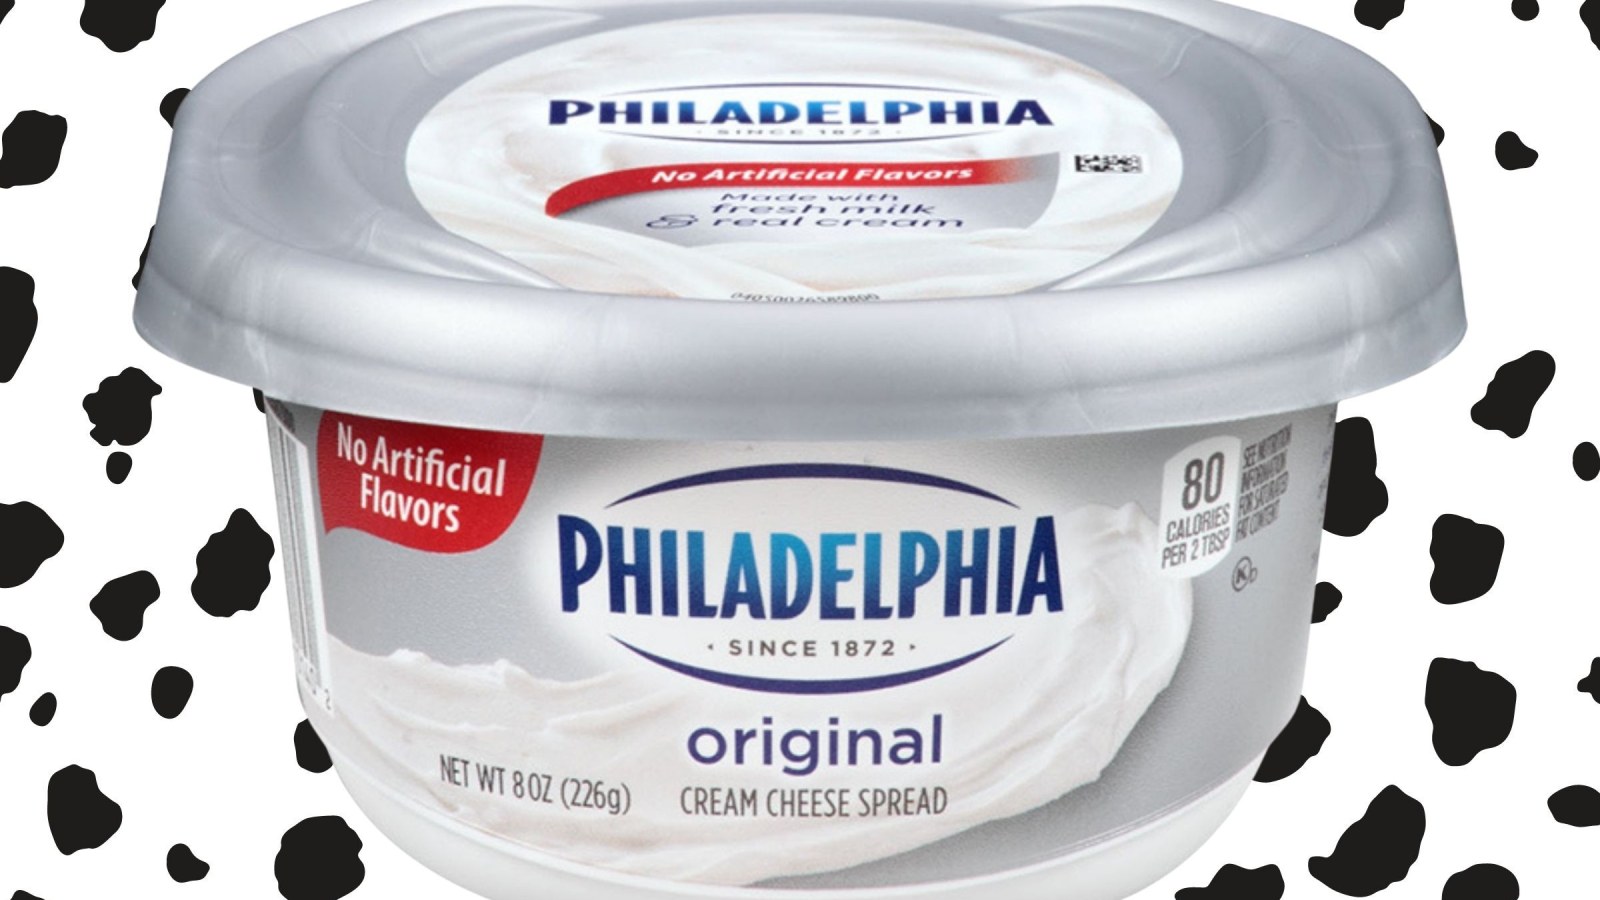 https://d.newsweek.com/en/full/2017244/philadelphia-cream-cheese-original.jpg?w=1600&h=900&q=88&f=7b26c190ab08498042b929b403c7ab72